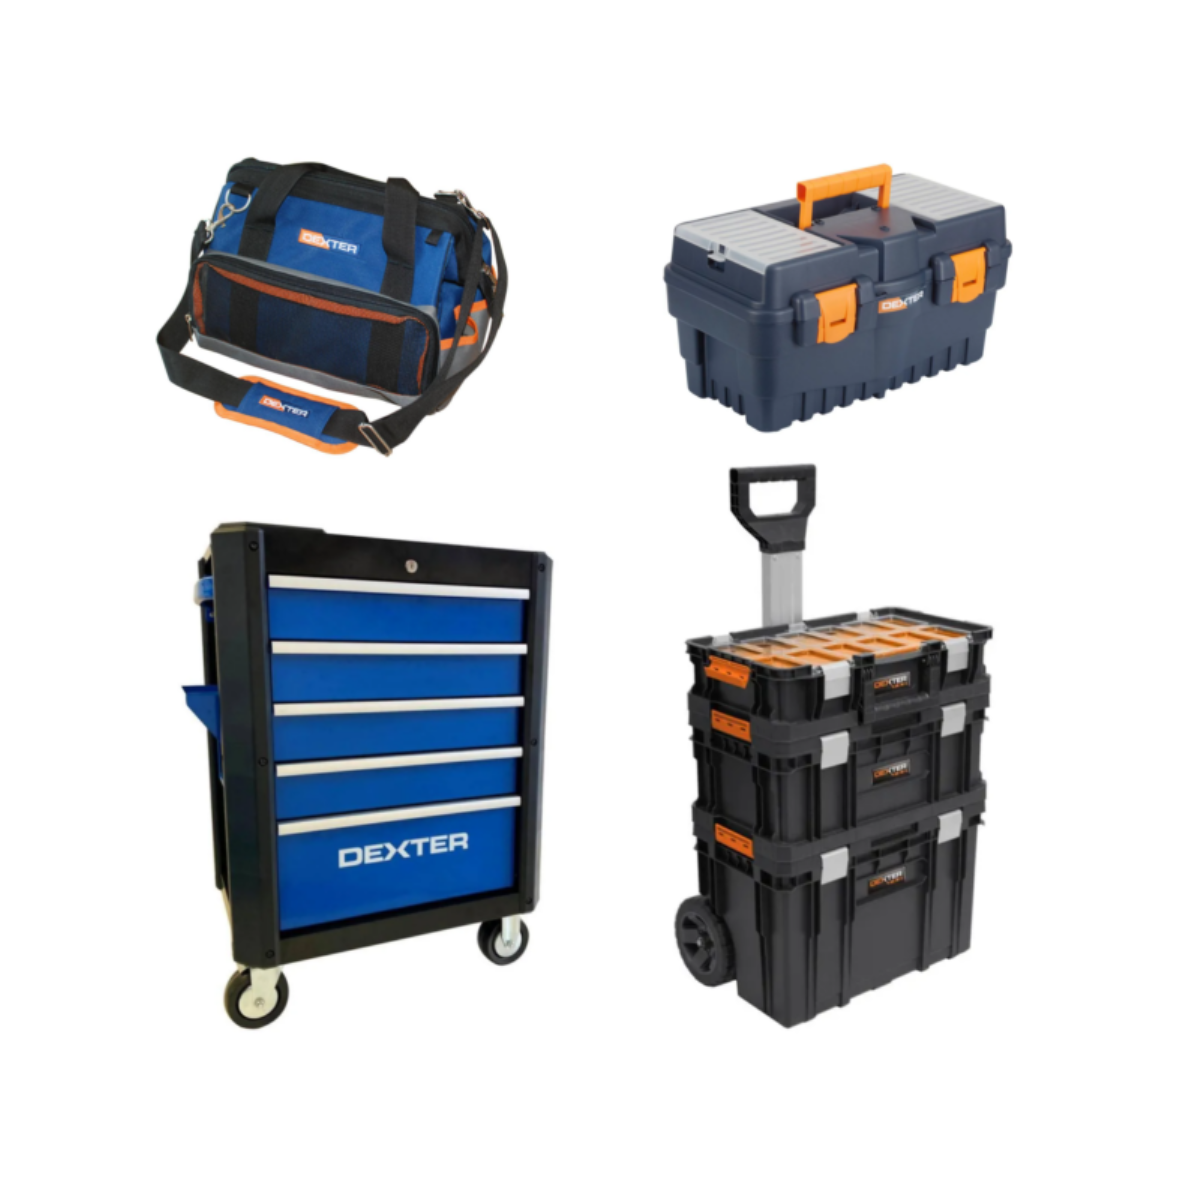 Caisse valise coffre boîte à outils à roulette rangement stockage 3 parties  92 cm helloshop26 02_0003817 - Conforama